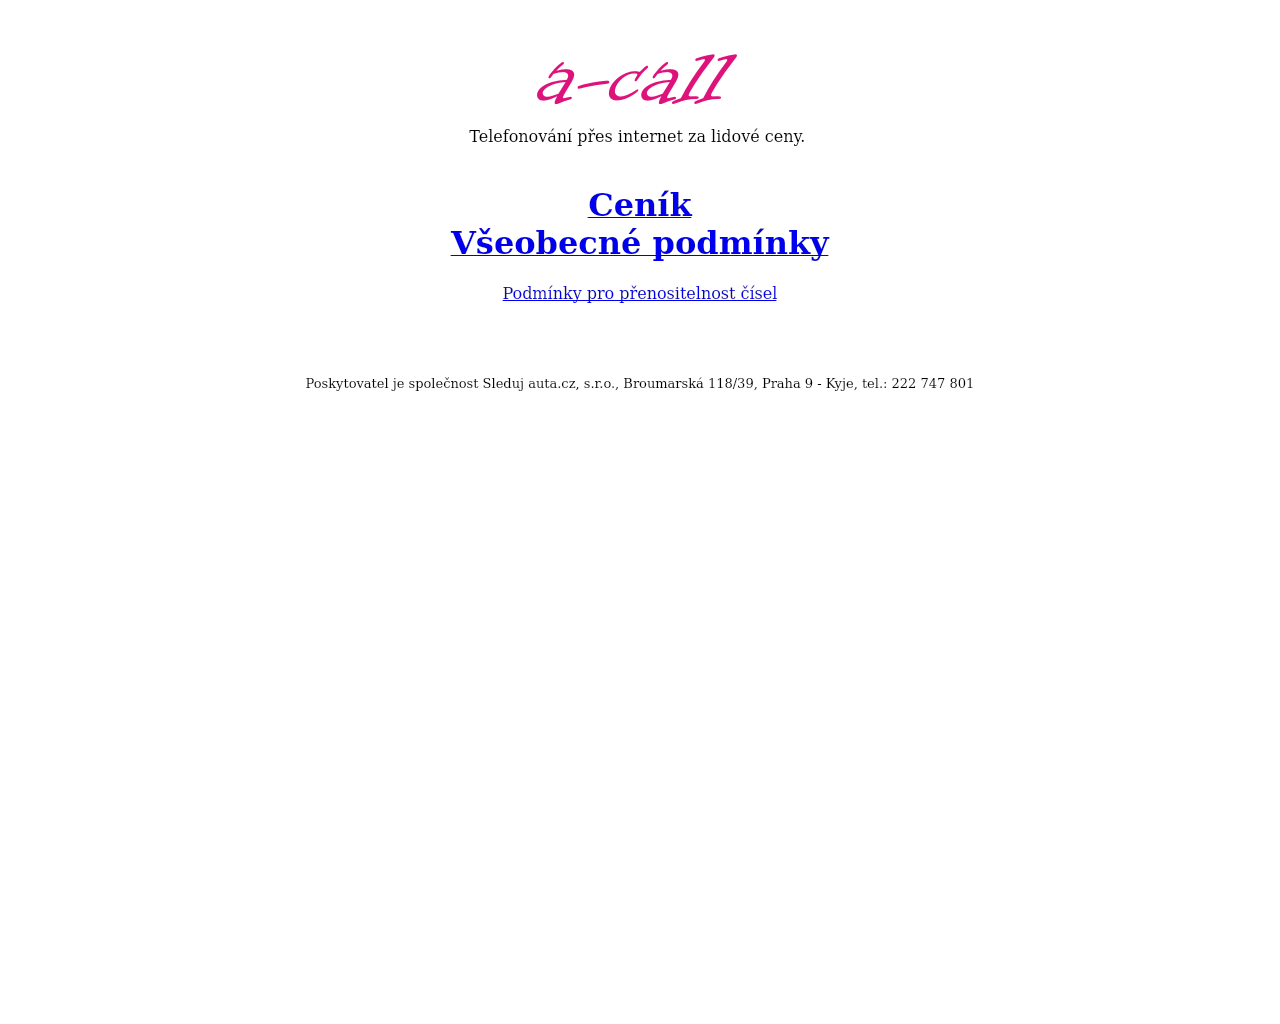 Site Image a-call.cz v 1280x1024